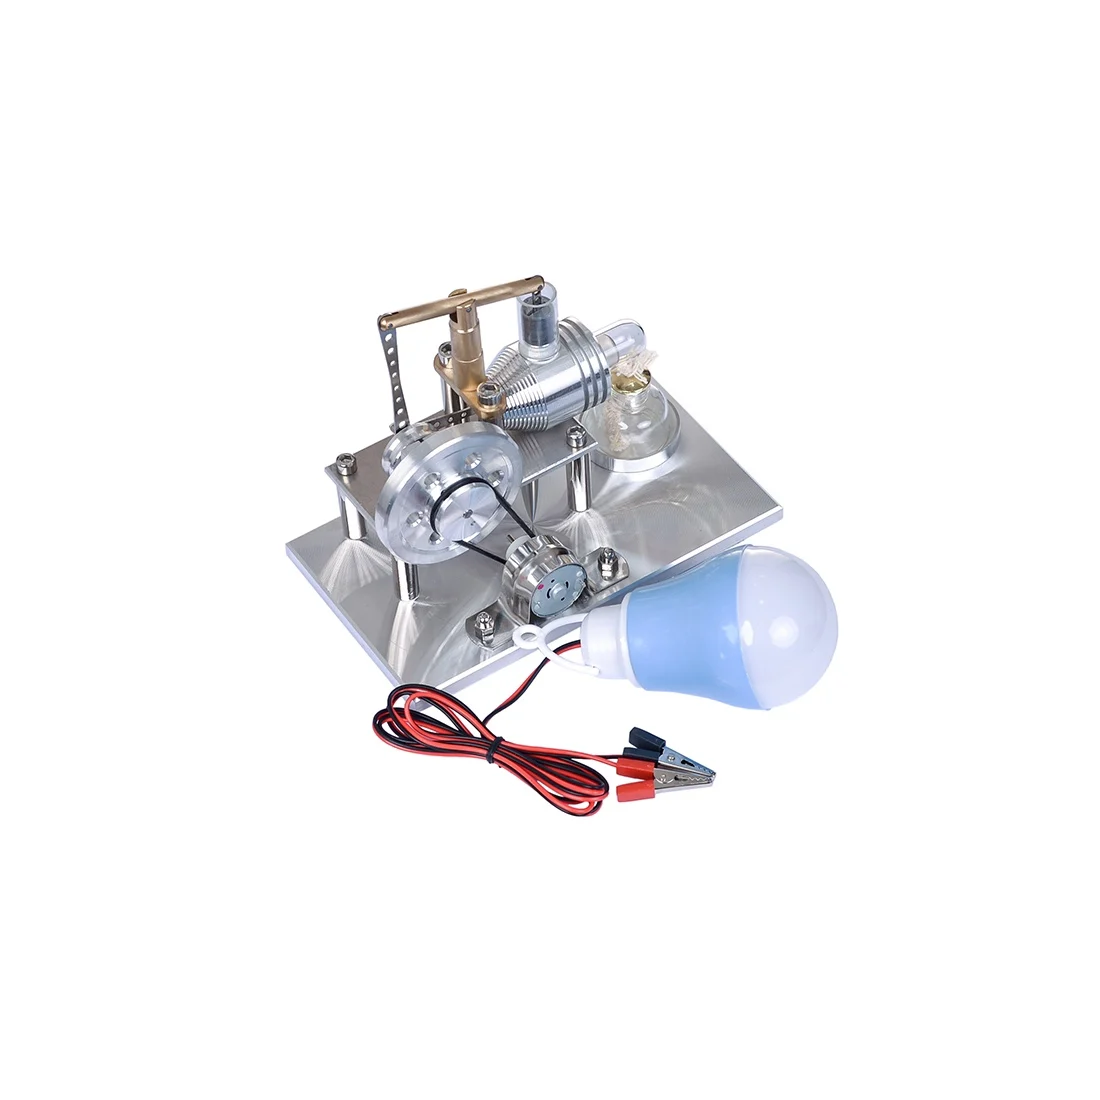 3D модел микродвигателя Стърлинг, парна енергийна технология, малка производствена експериментална играчка